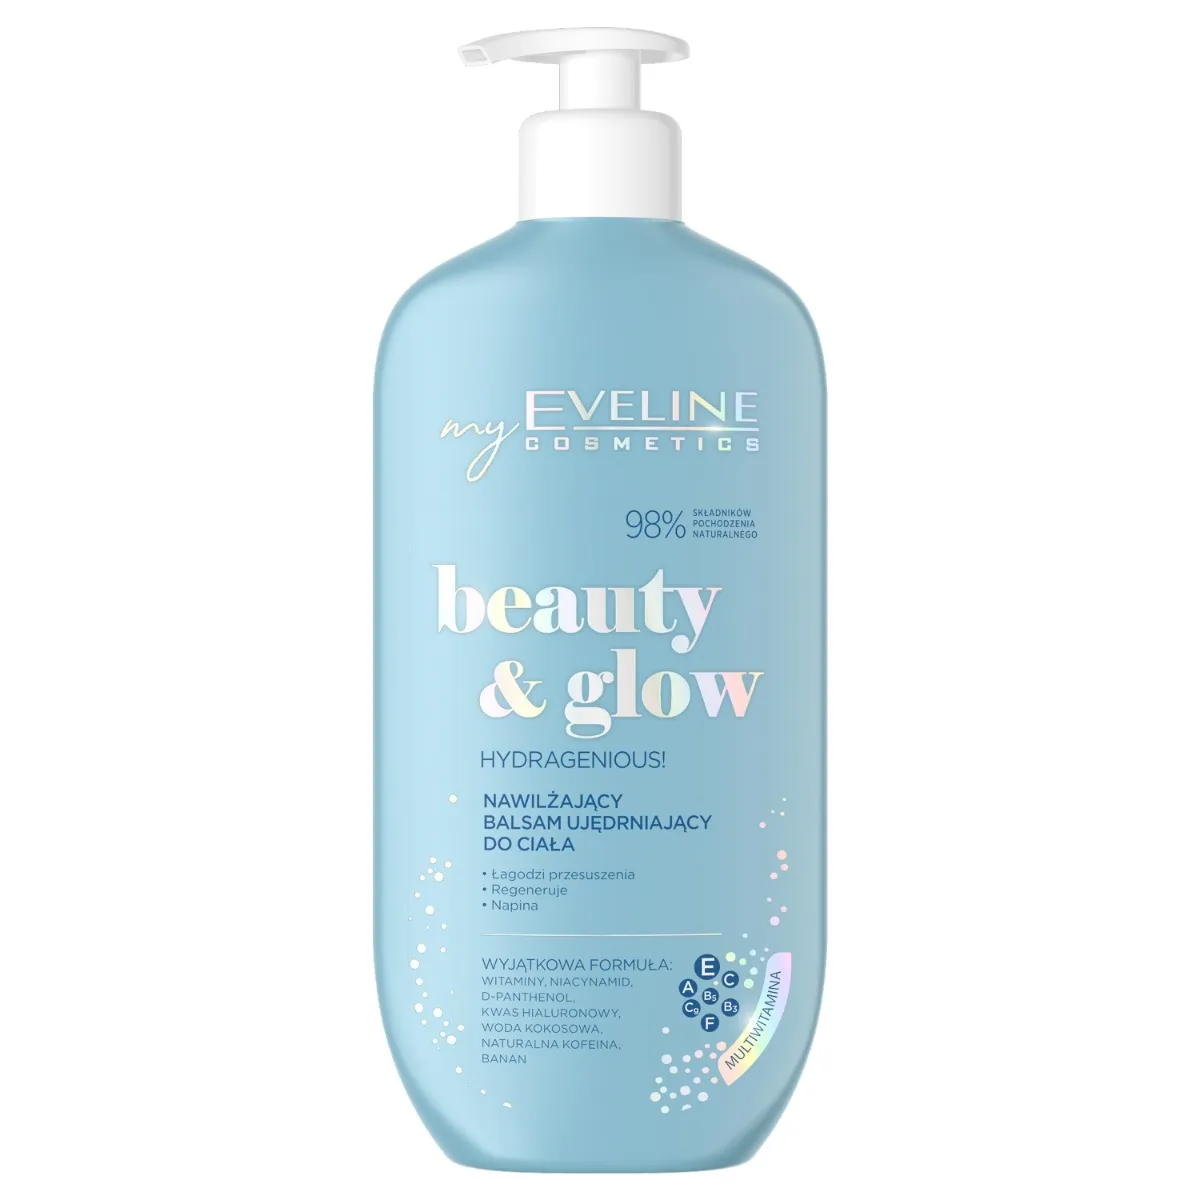 Eveline Cosmetics Beauty & Glow nawilżający balsam ujędrniający do ciała, 350 ml